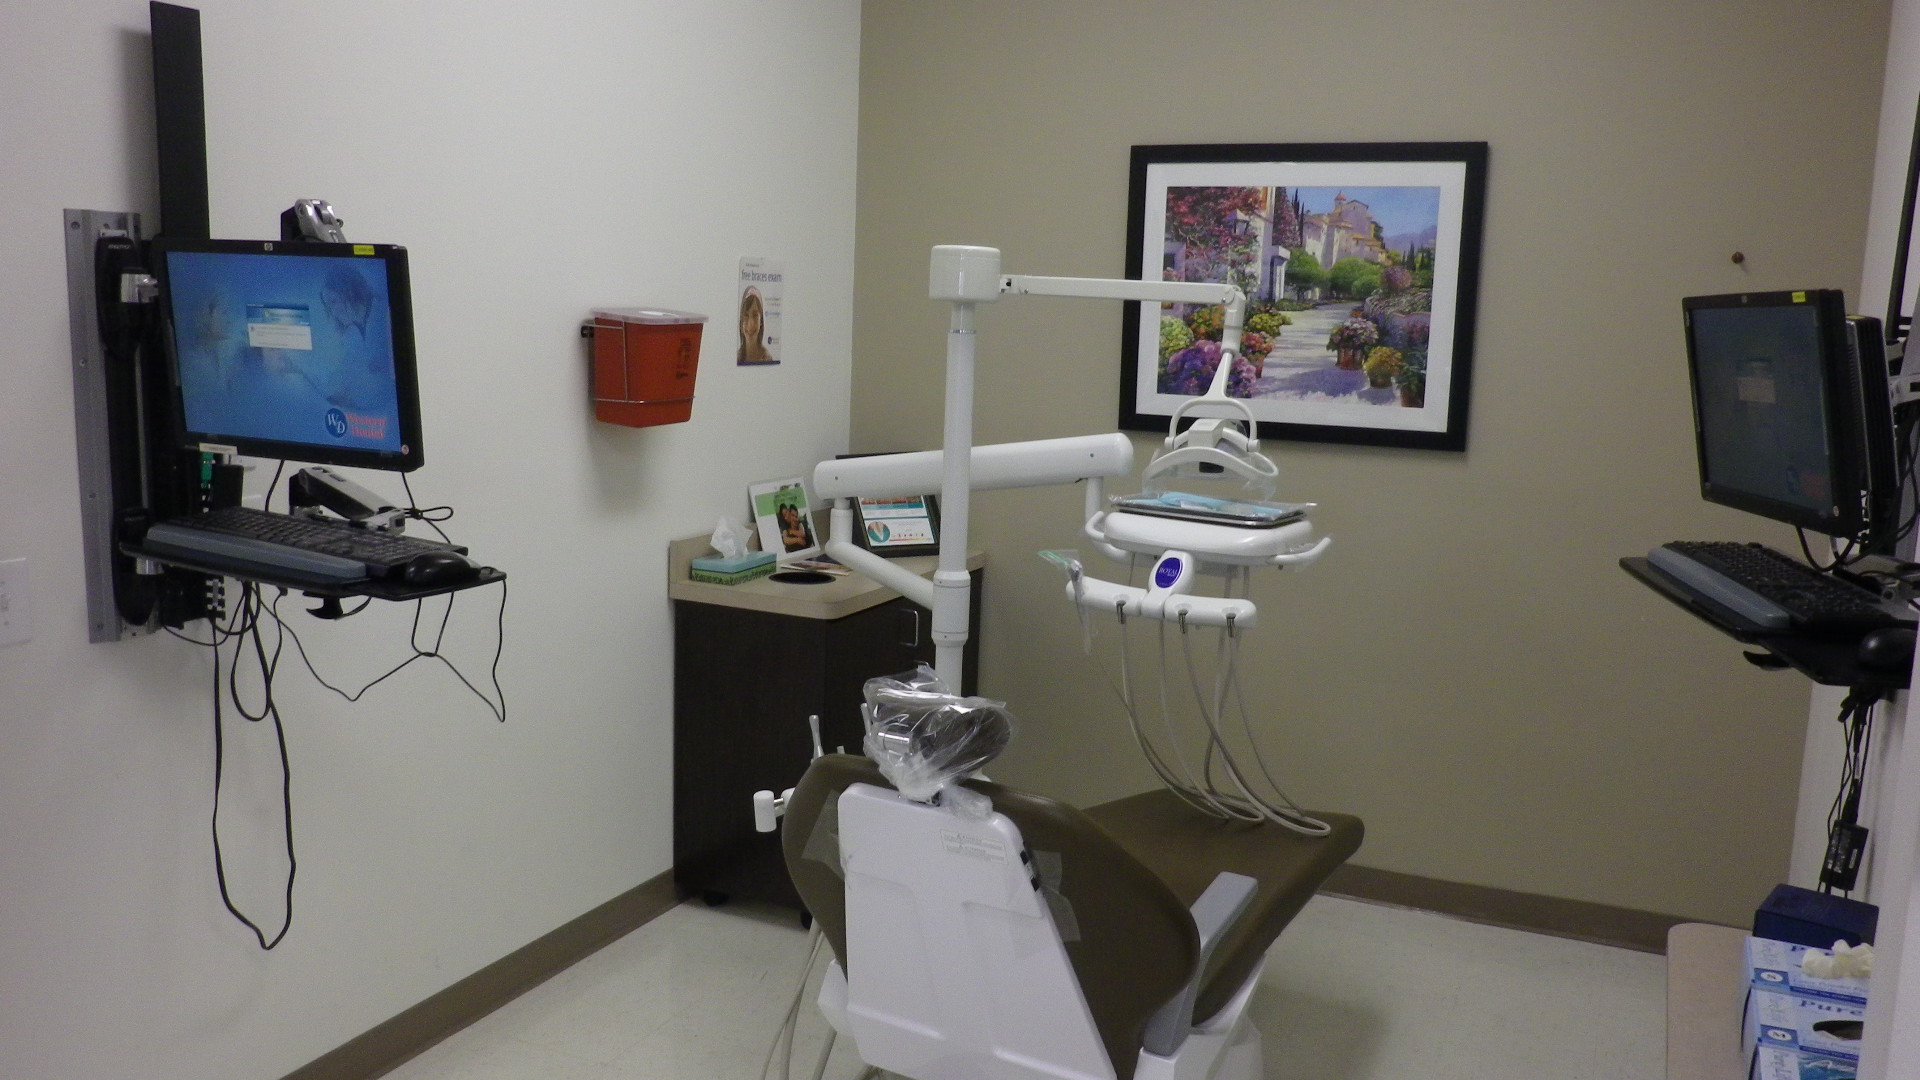 Dentist chair facing away.jpg?lang=en